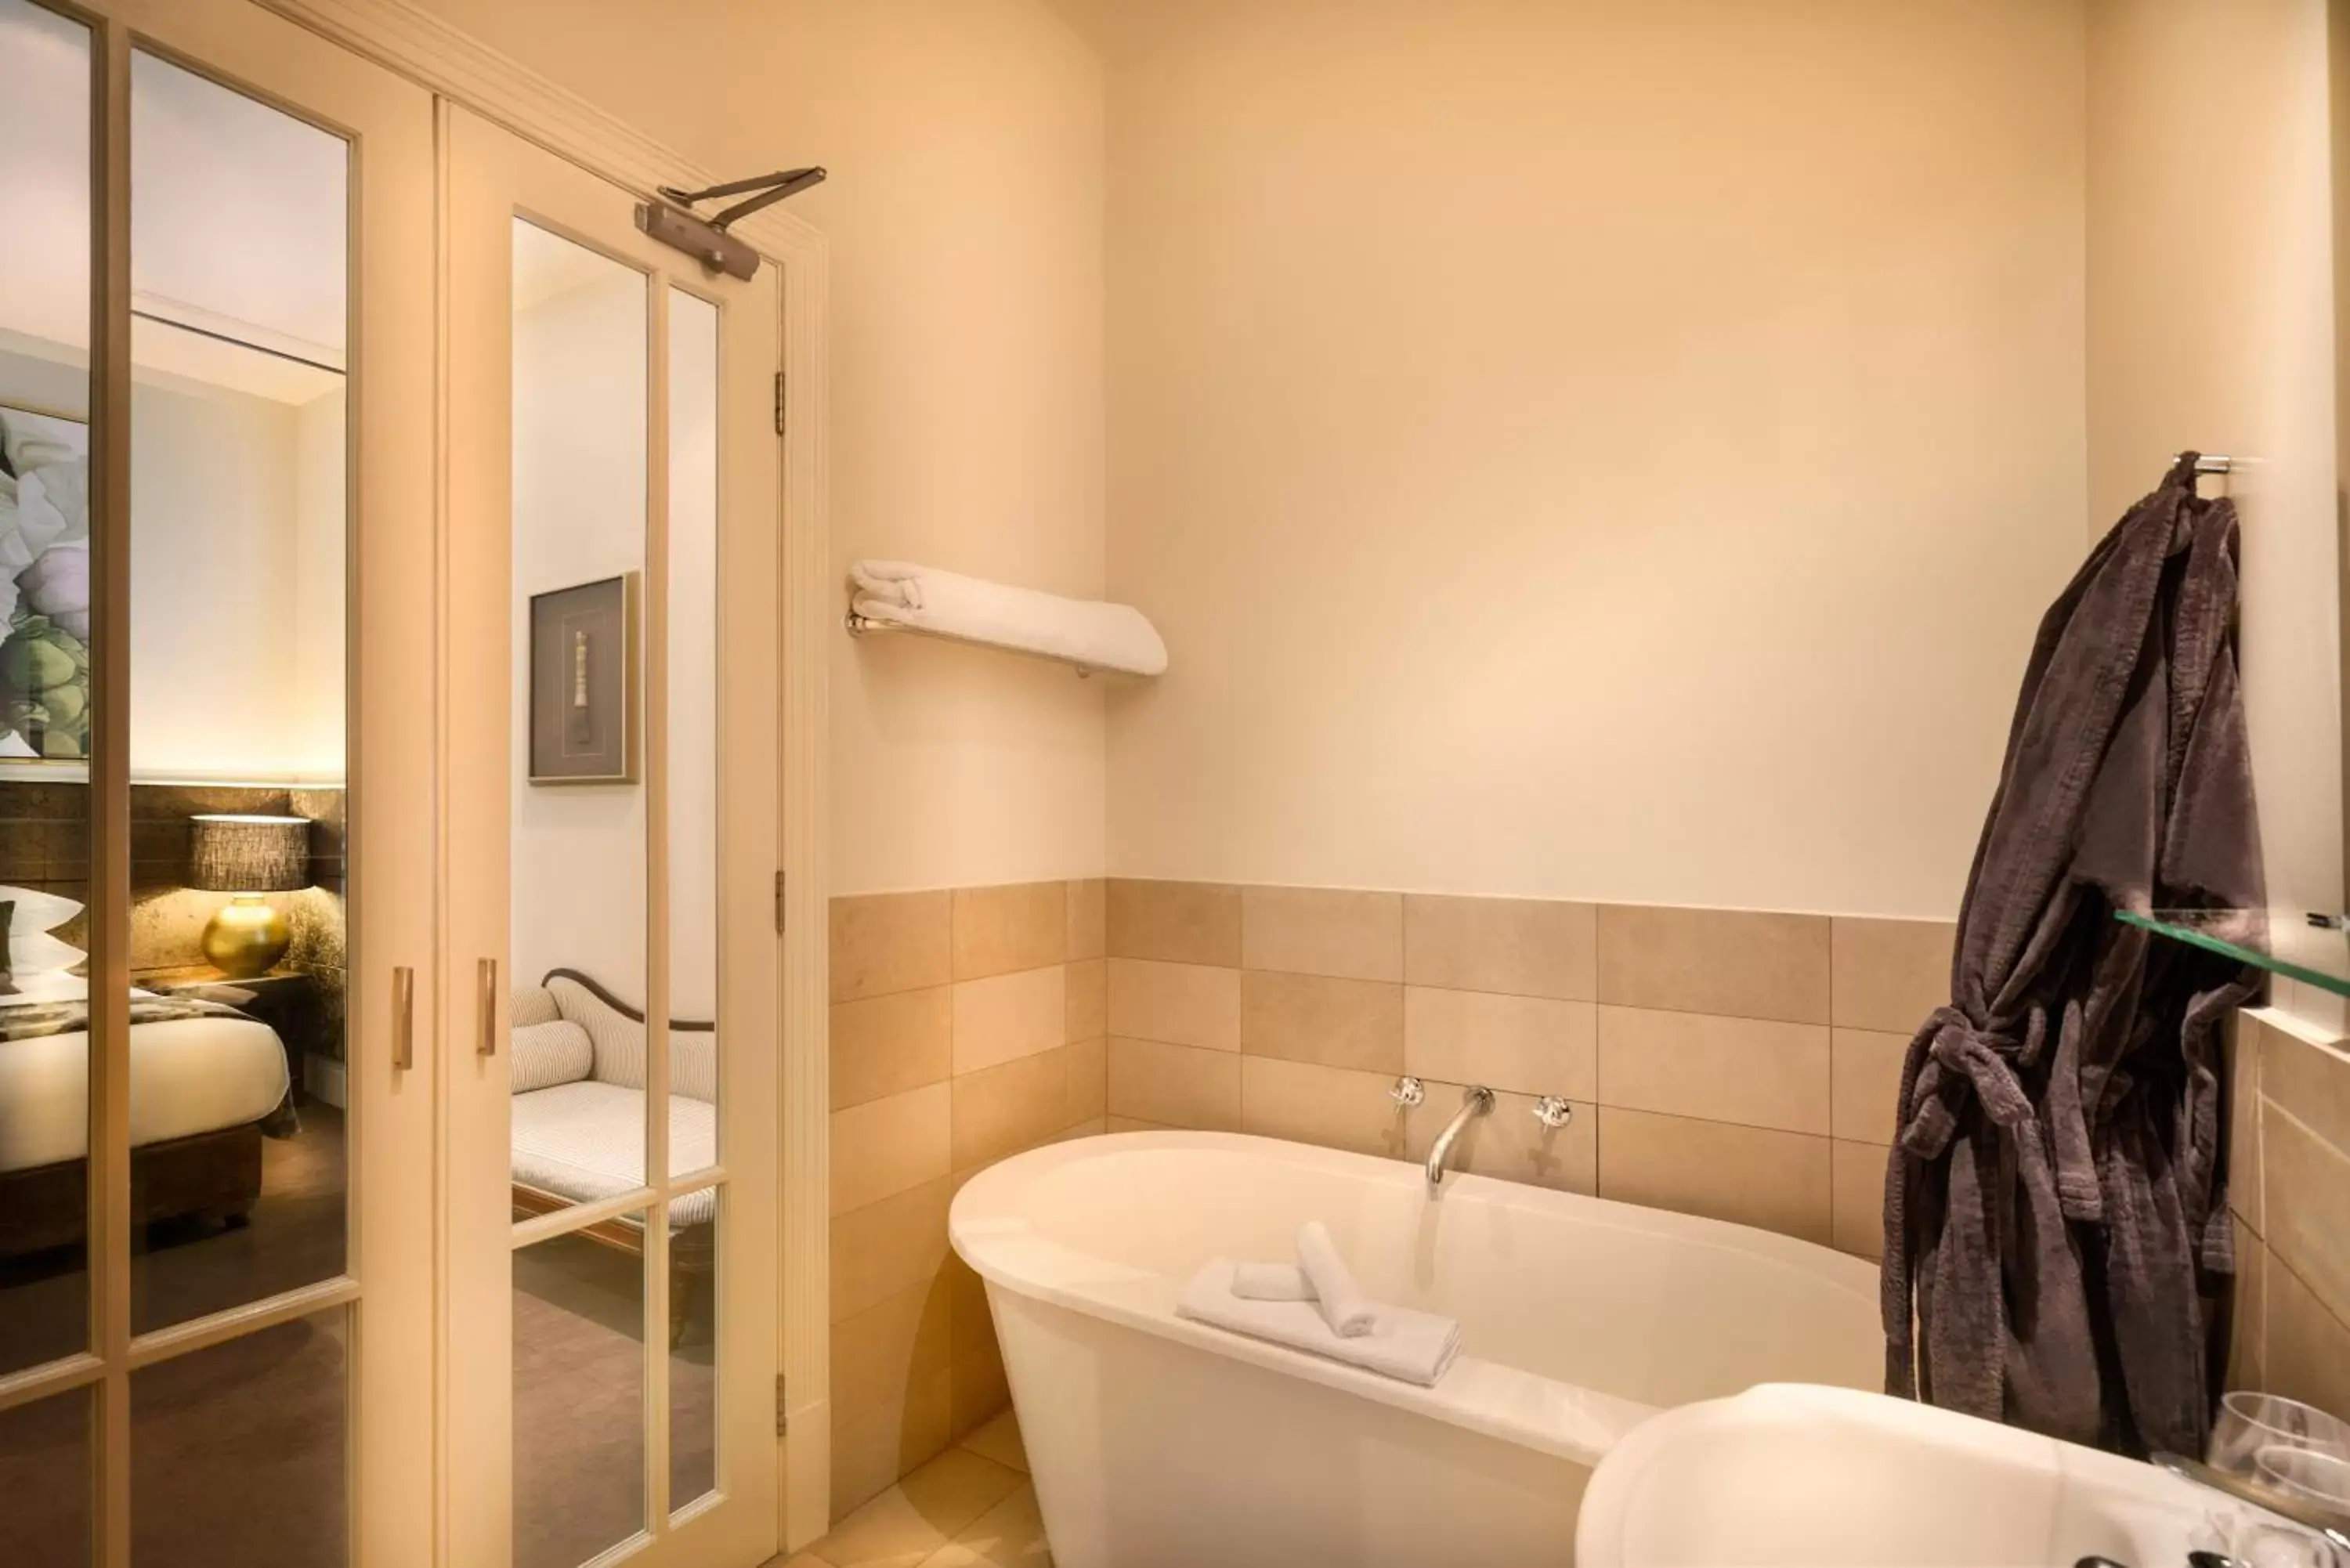 Bathroom in Hotel Frangos